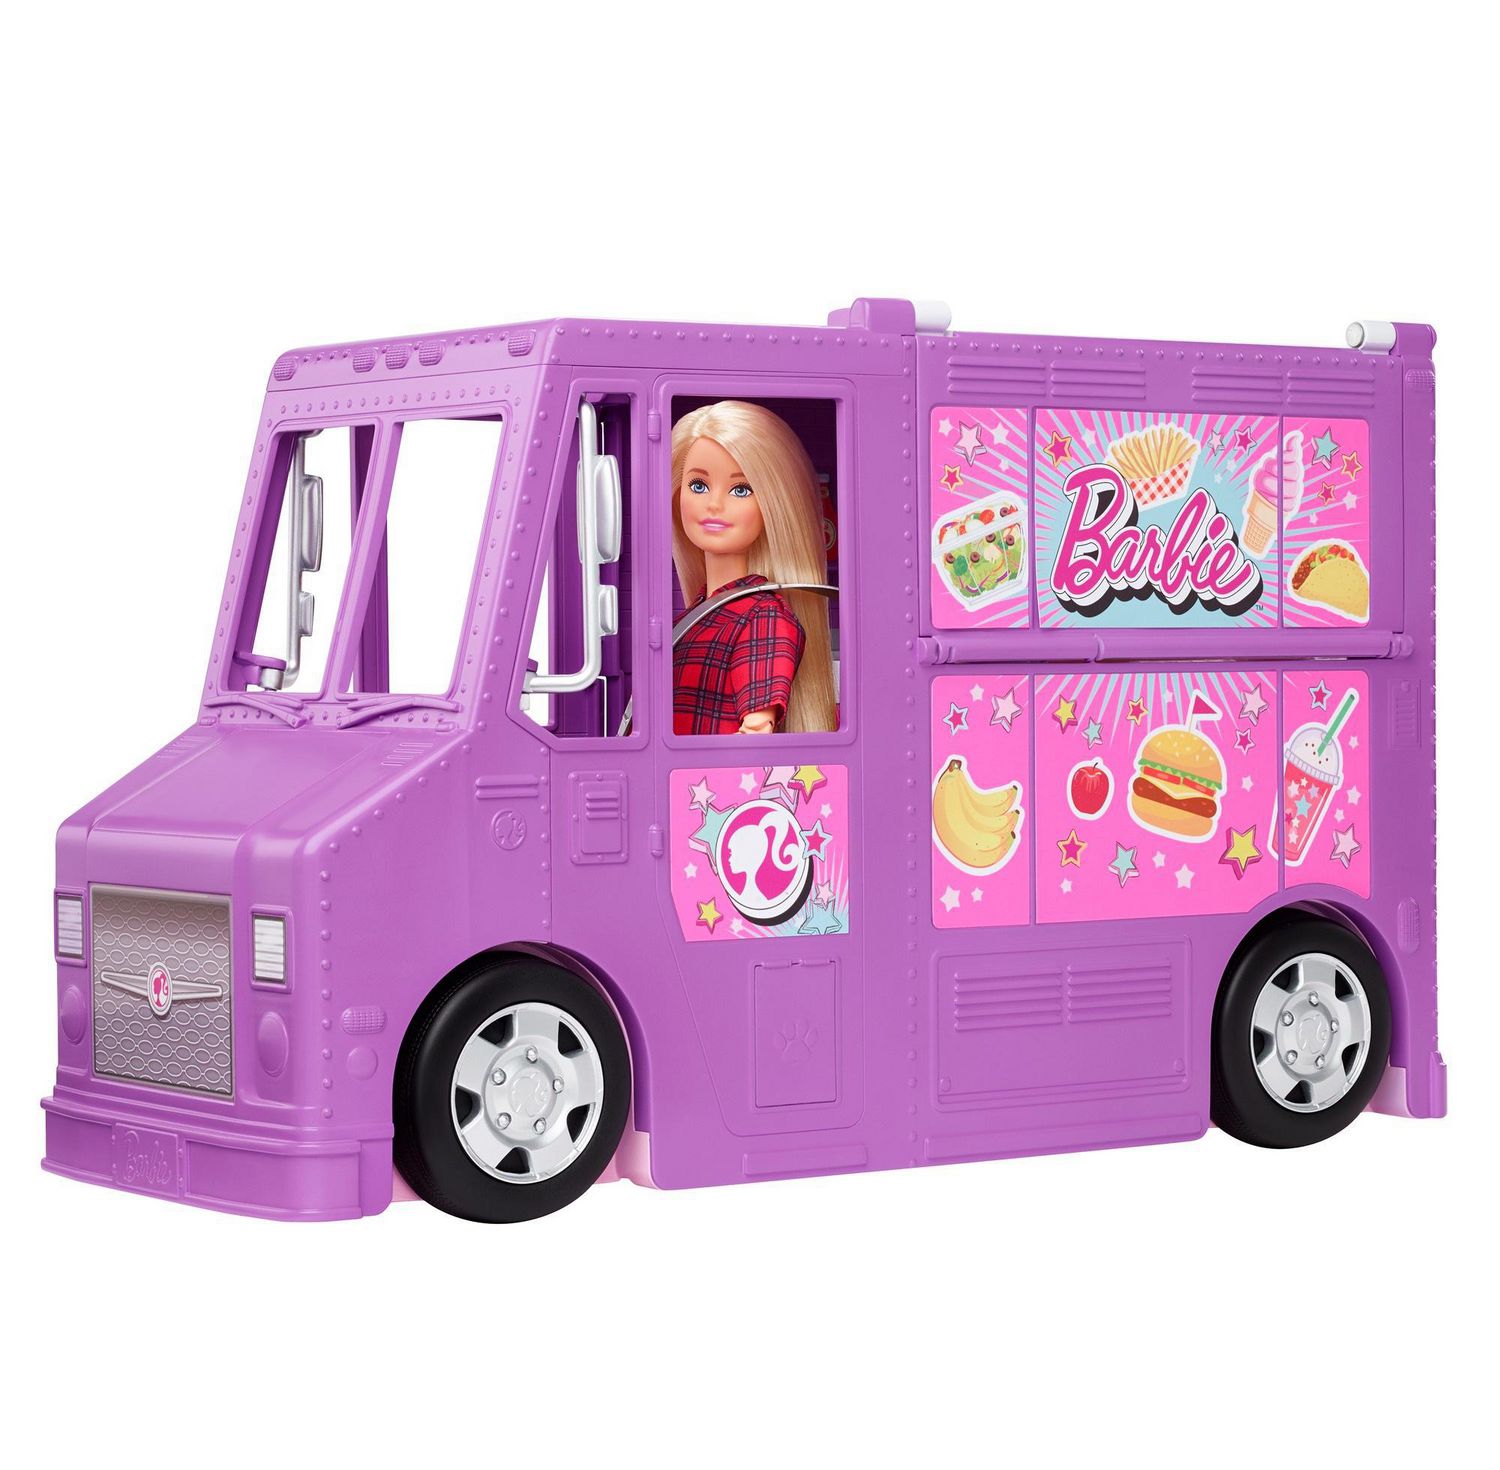 food van toy